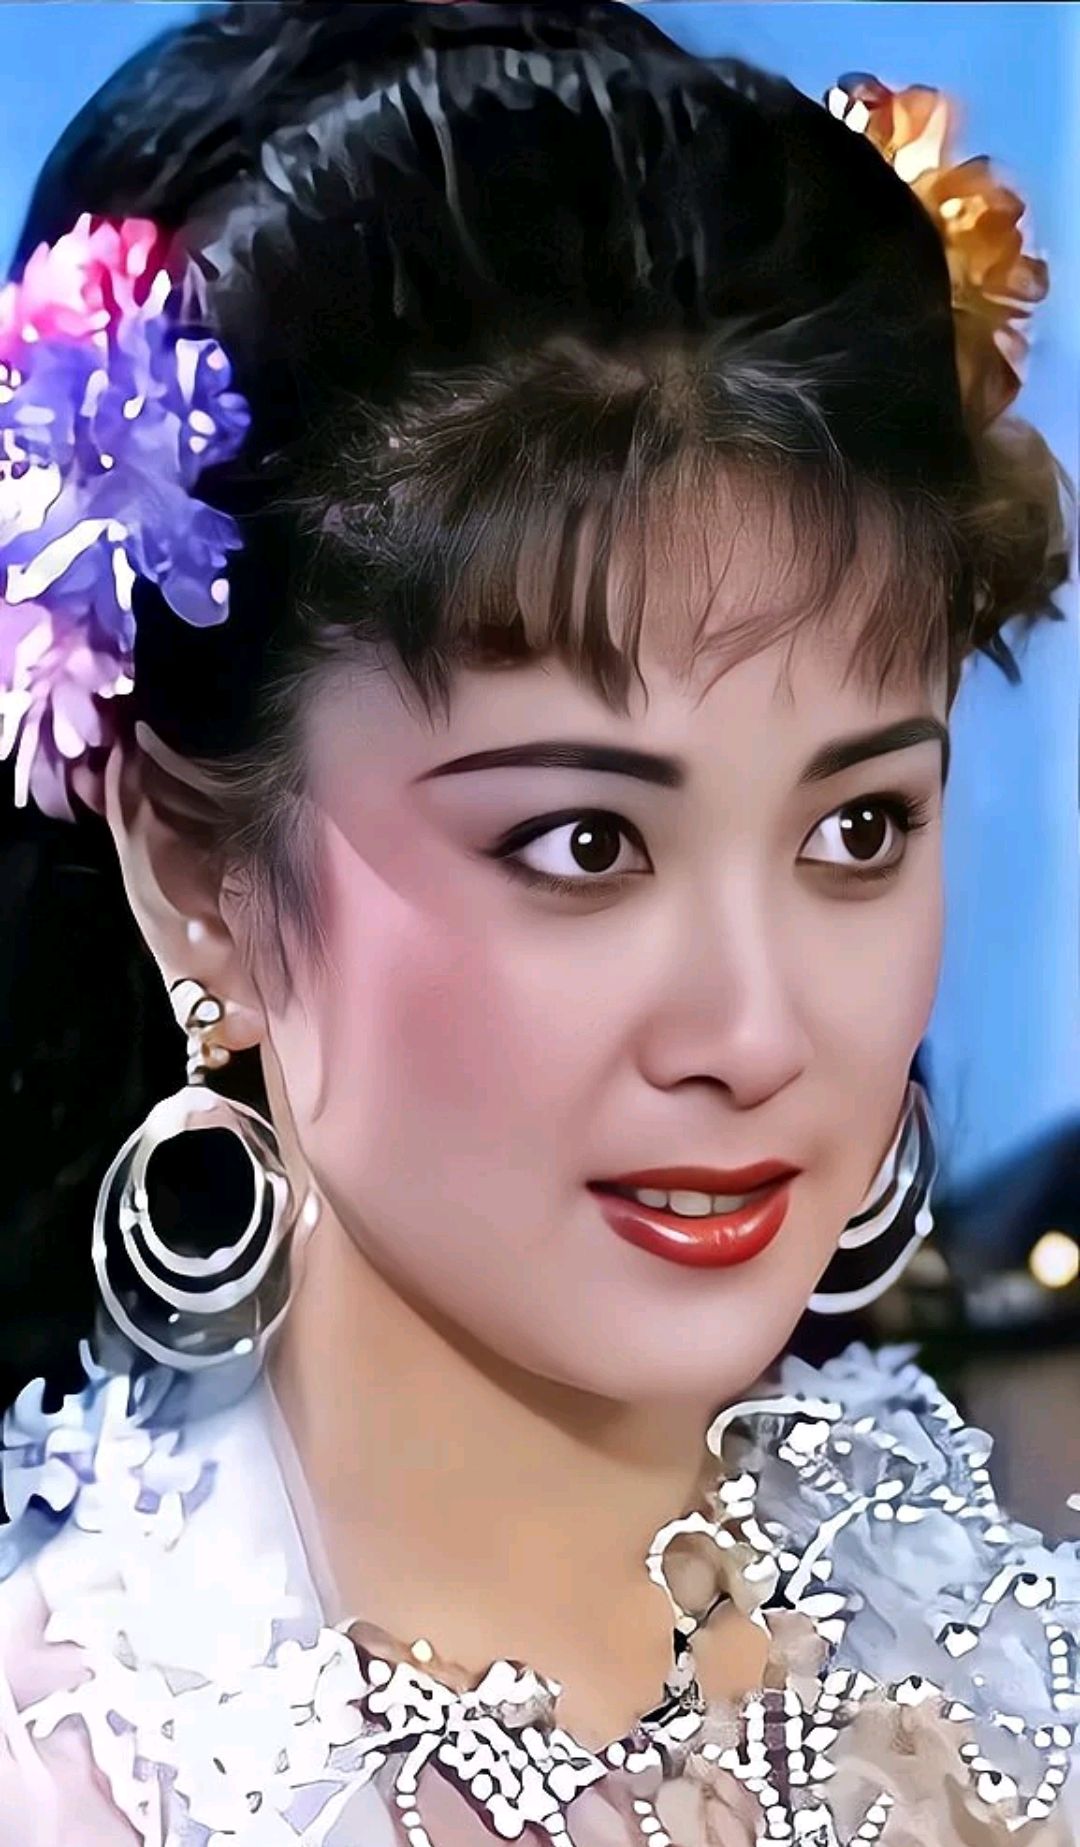 傅艺伟饰演的苏妲己,身段妖娆,魅惑入骨,当年是多少男观众的白月光